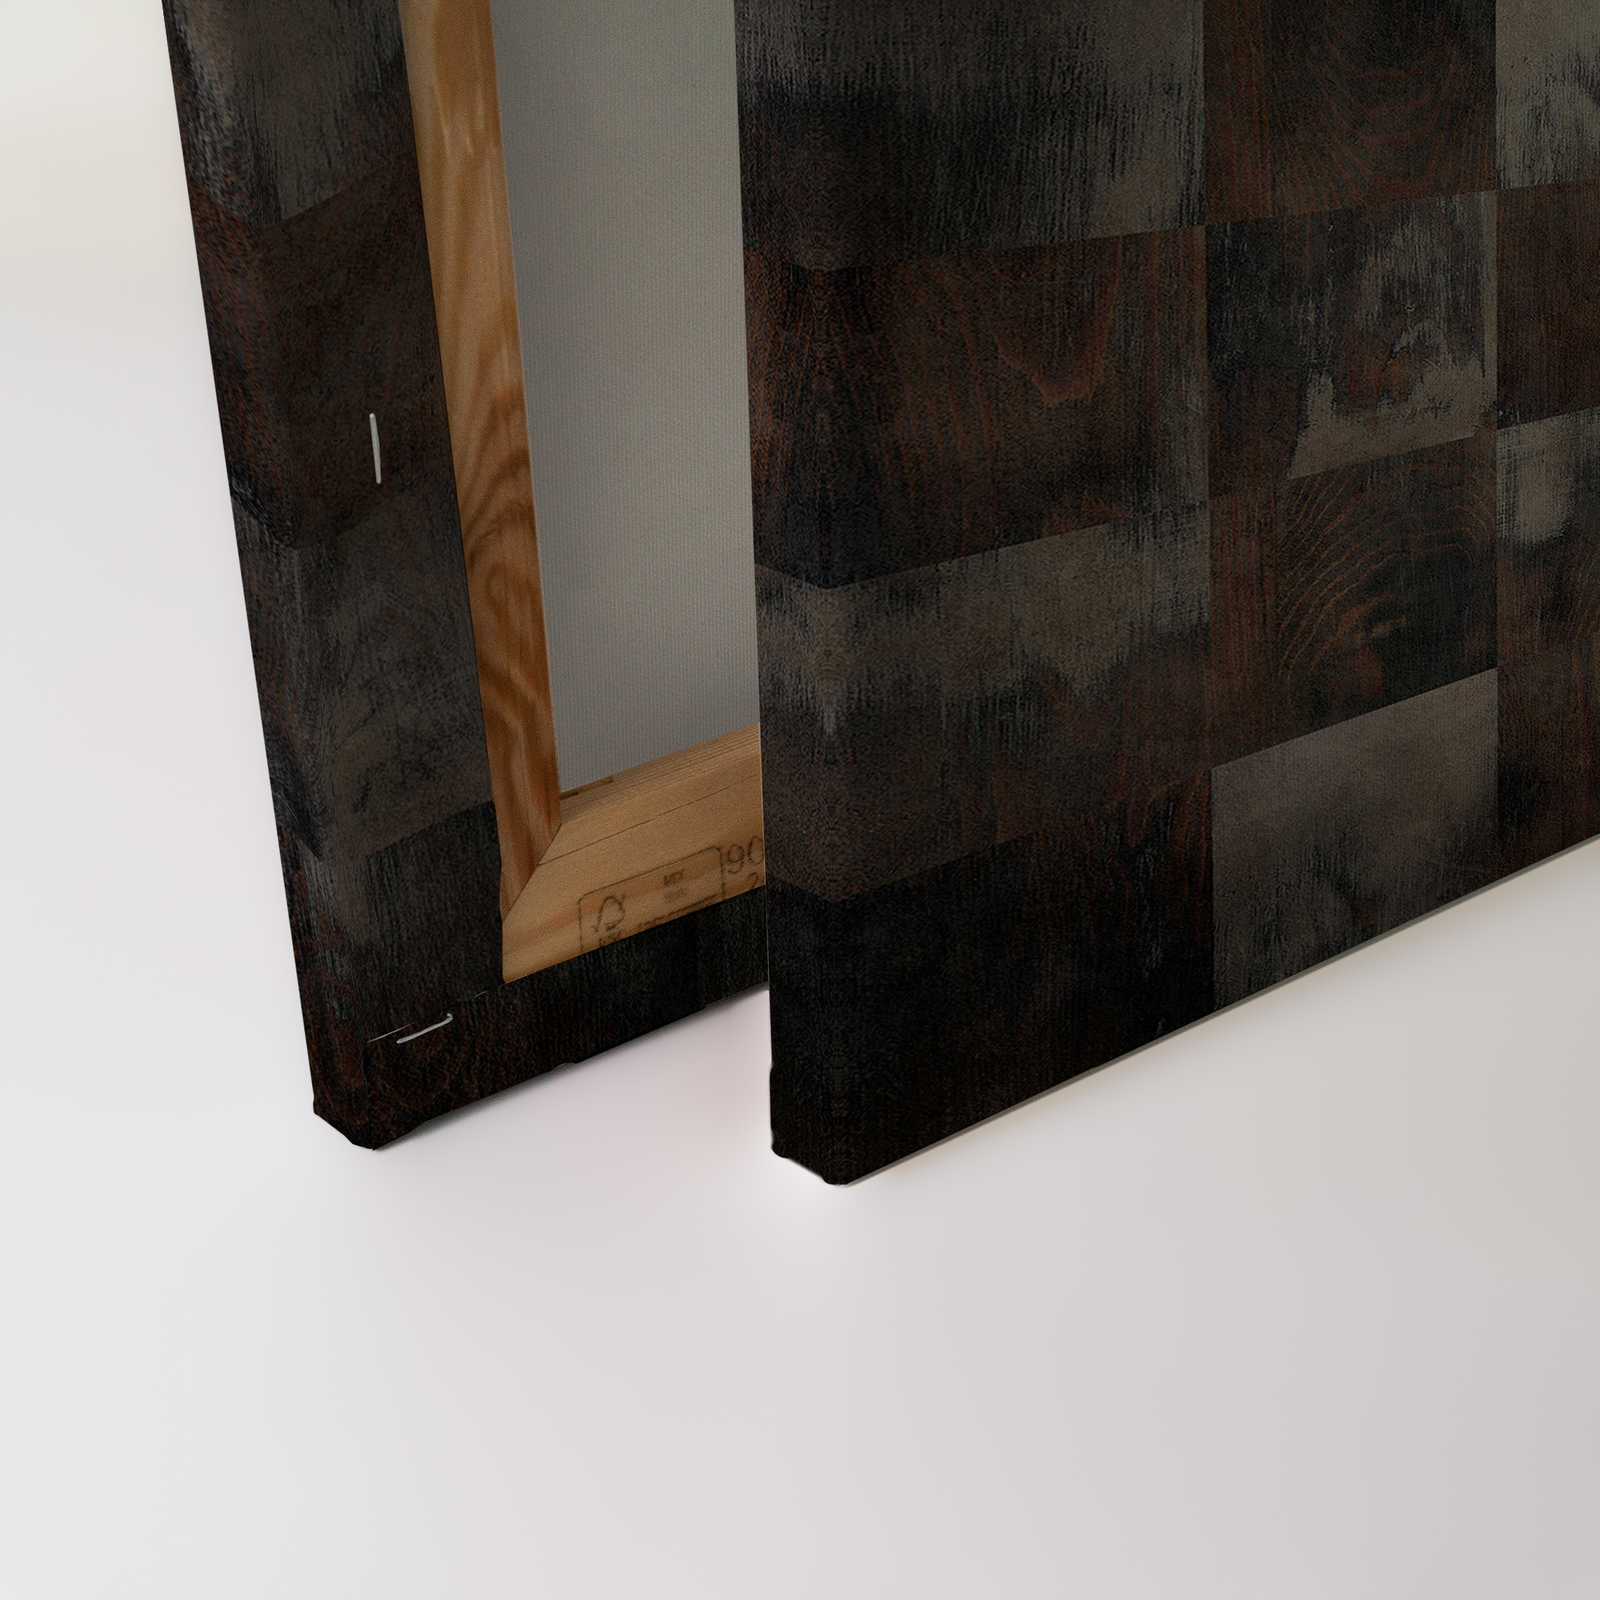             Factory 2 - Toile aspect bois motif échiquier usé - 1,20 m x 0,80 m
        